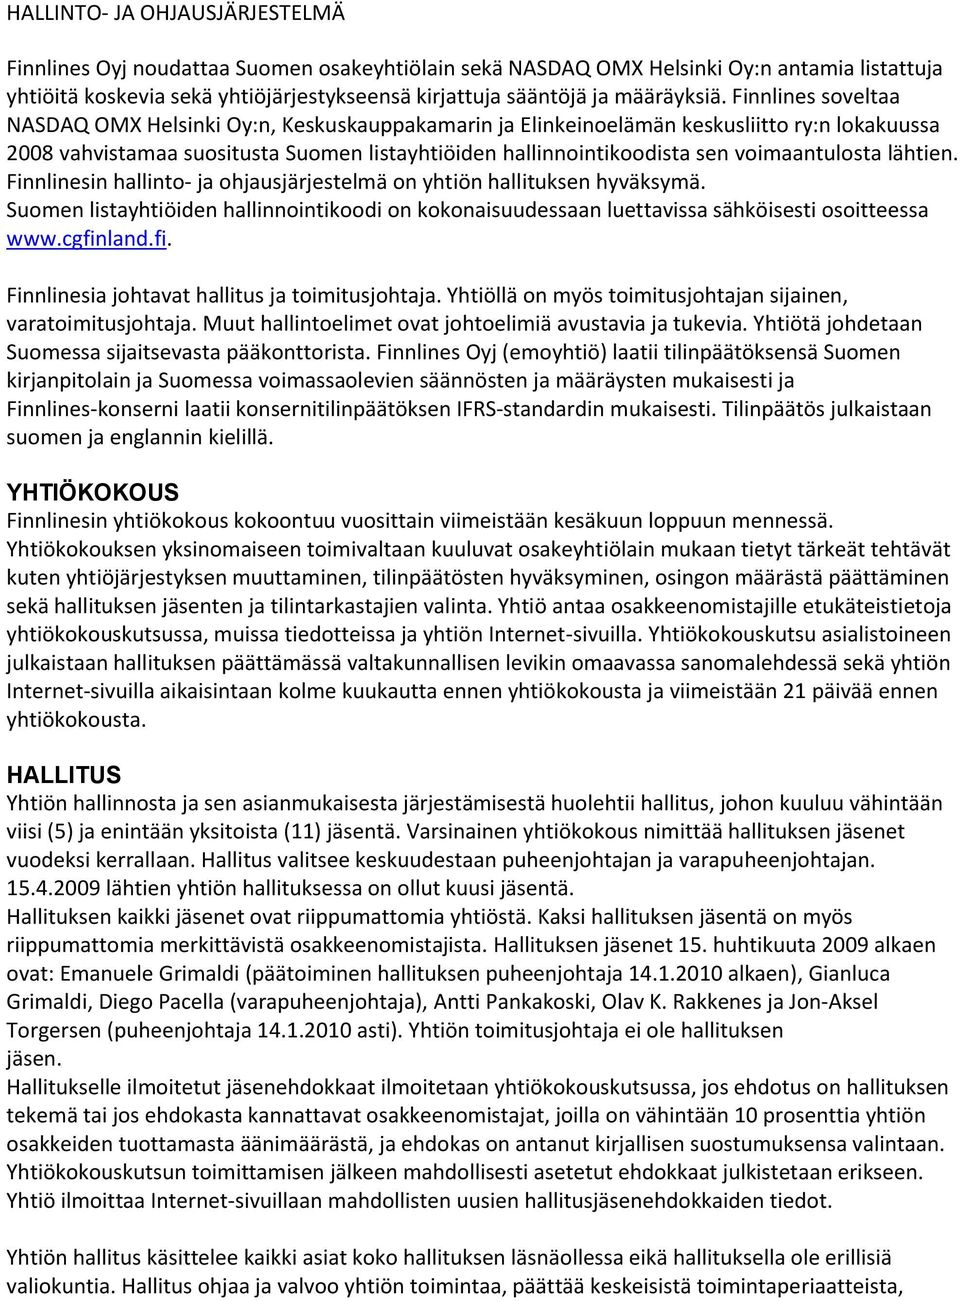 Finnlines soveltaa NASDAQ OMX Helsinki Oy:n, Keskuskauppakamarin ja Elinkeinoelämän keskusliitto ry:n lokakuussa 2008 vahvistamaa suositusta Suomen listayhtiöiden hallinnointikoodista sen